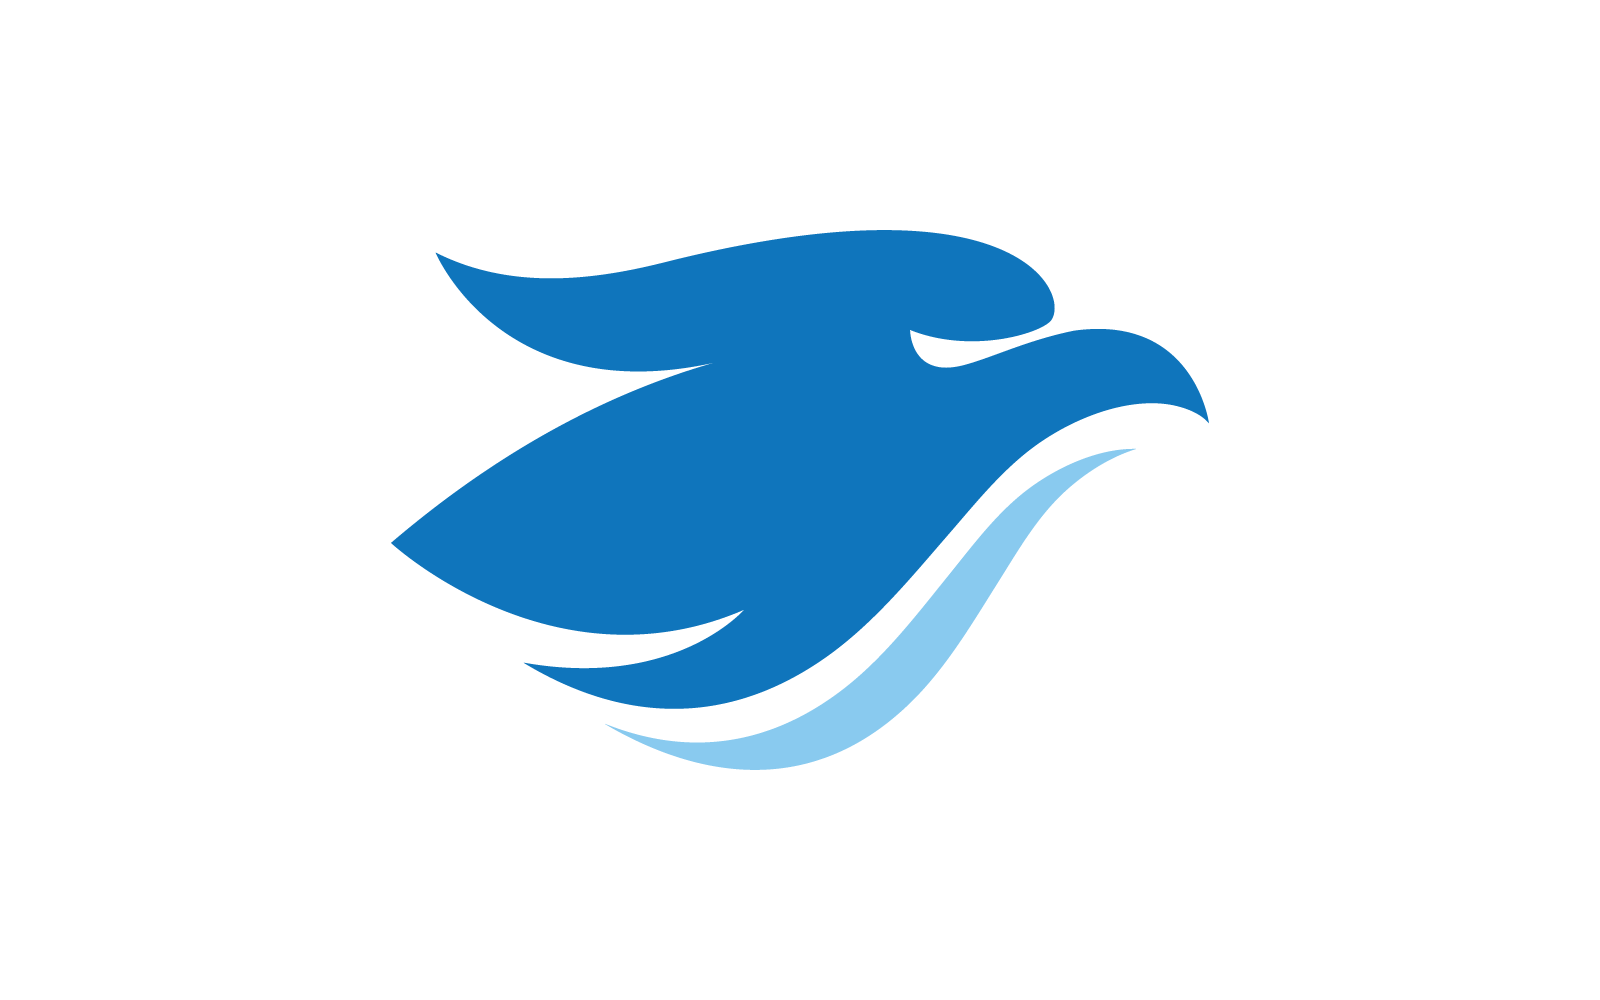 Falcon eagle bird illustration logo design icon vector